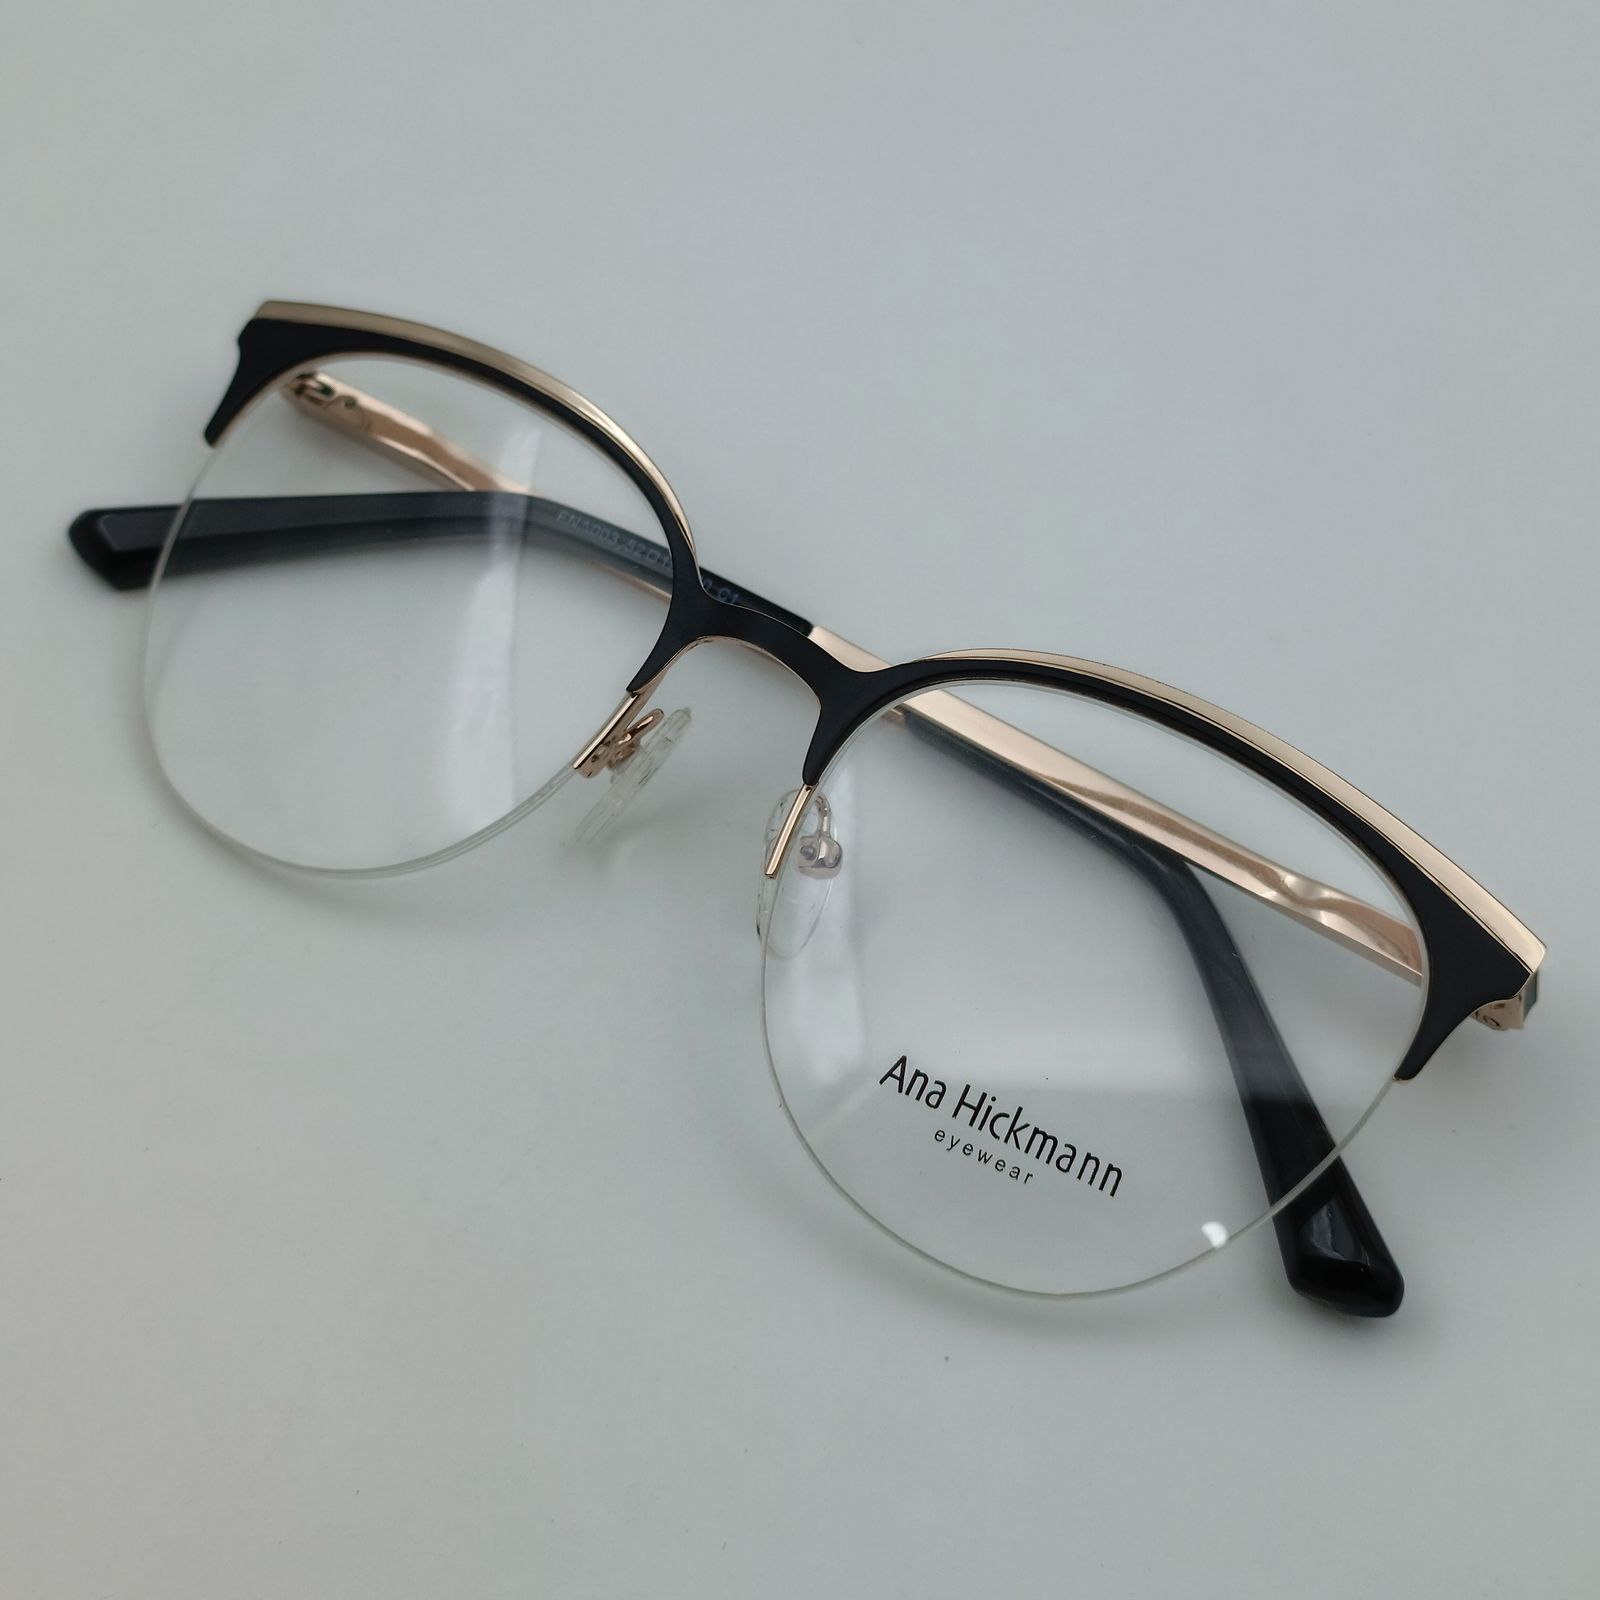 فریم عینک طبی زنانه آناهیکمن مدل FNA003 C1 به همراه کاور آفتابی -  - 12